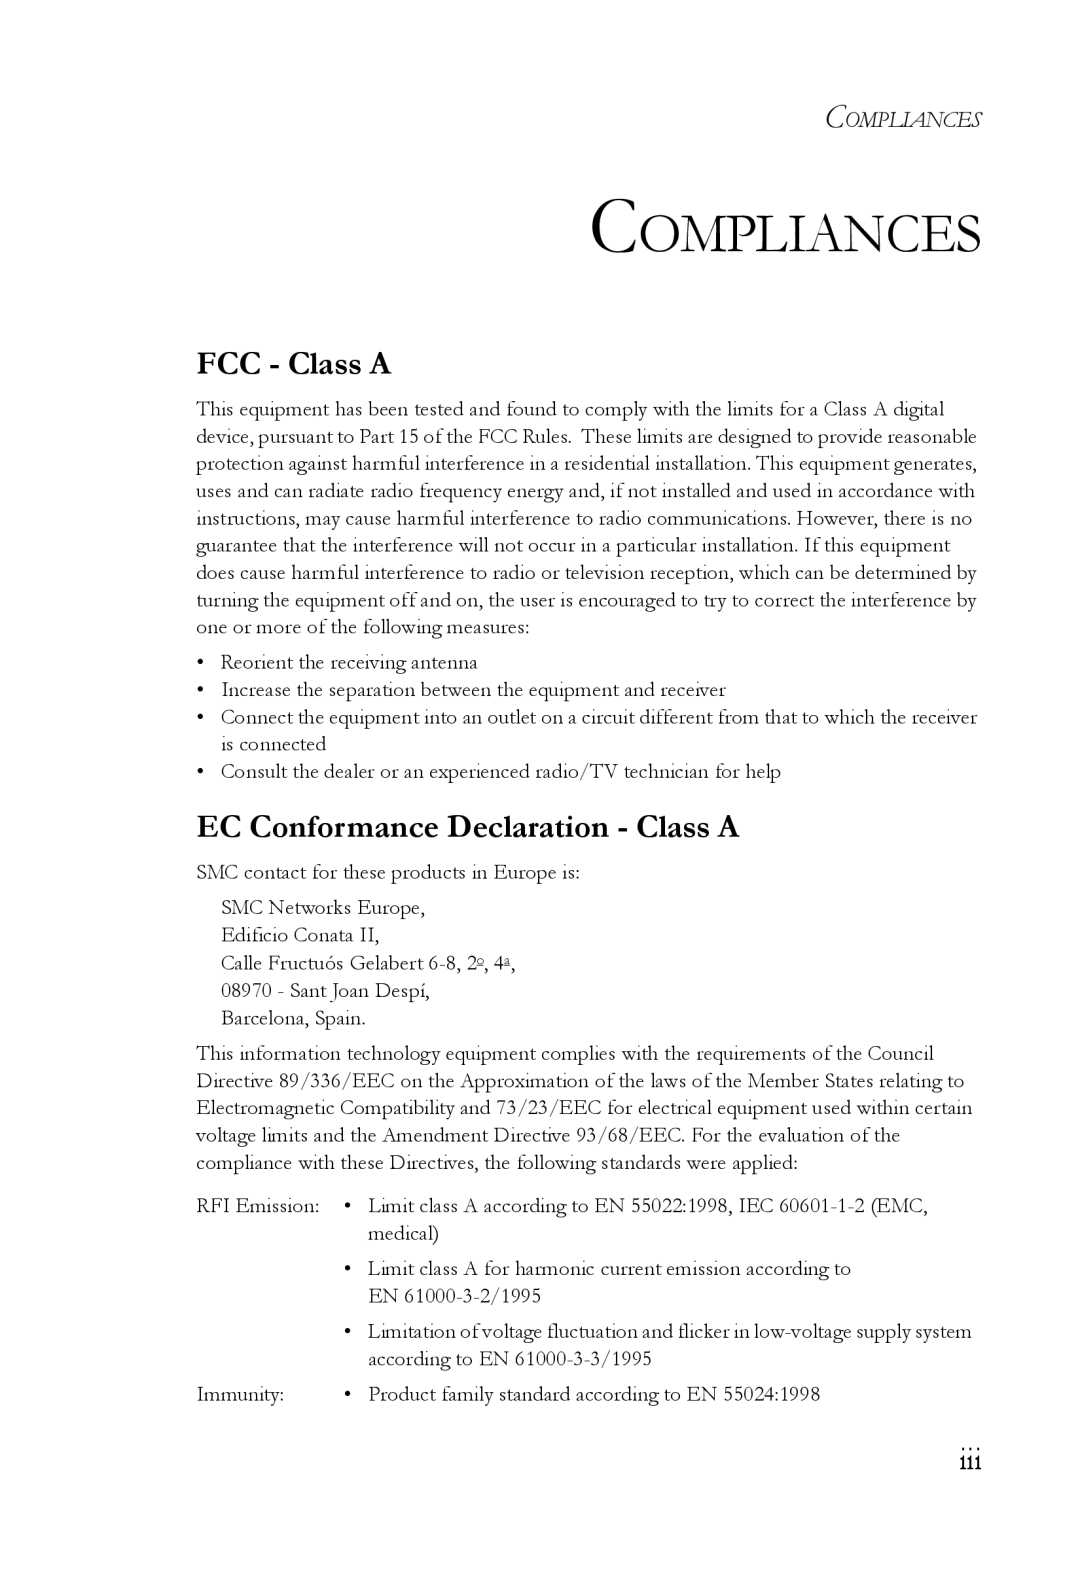 SMC Networks SMCGS24 manual Compliances, FCC - Class A, EC Conformance Declaration - Class A 